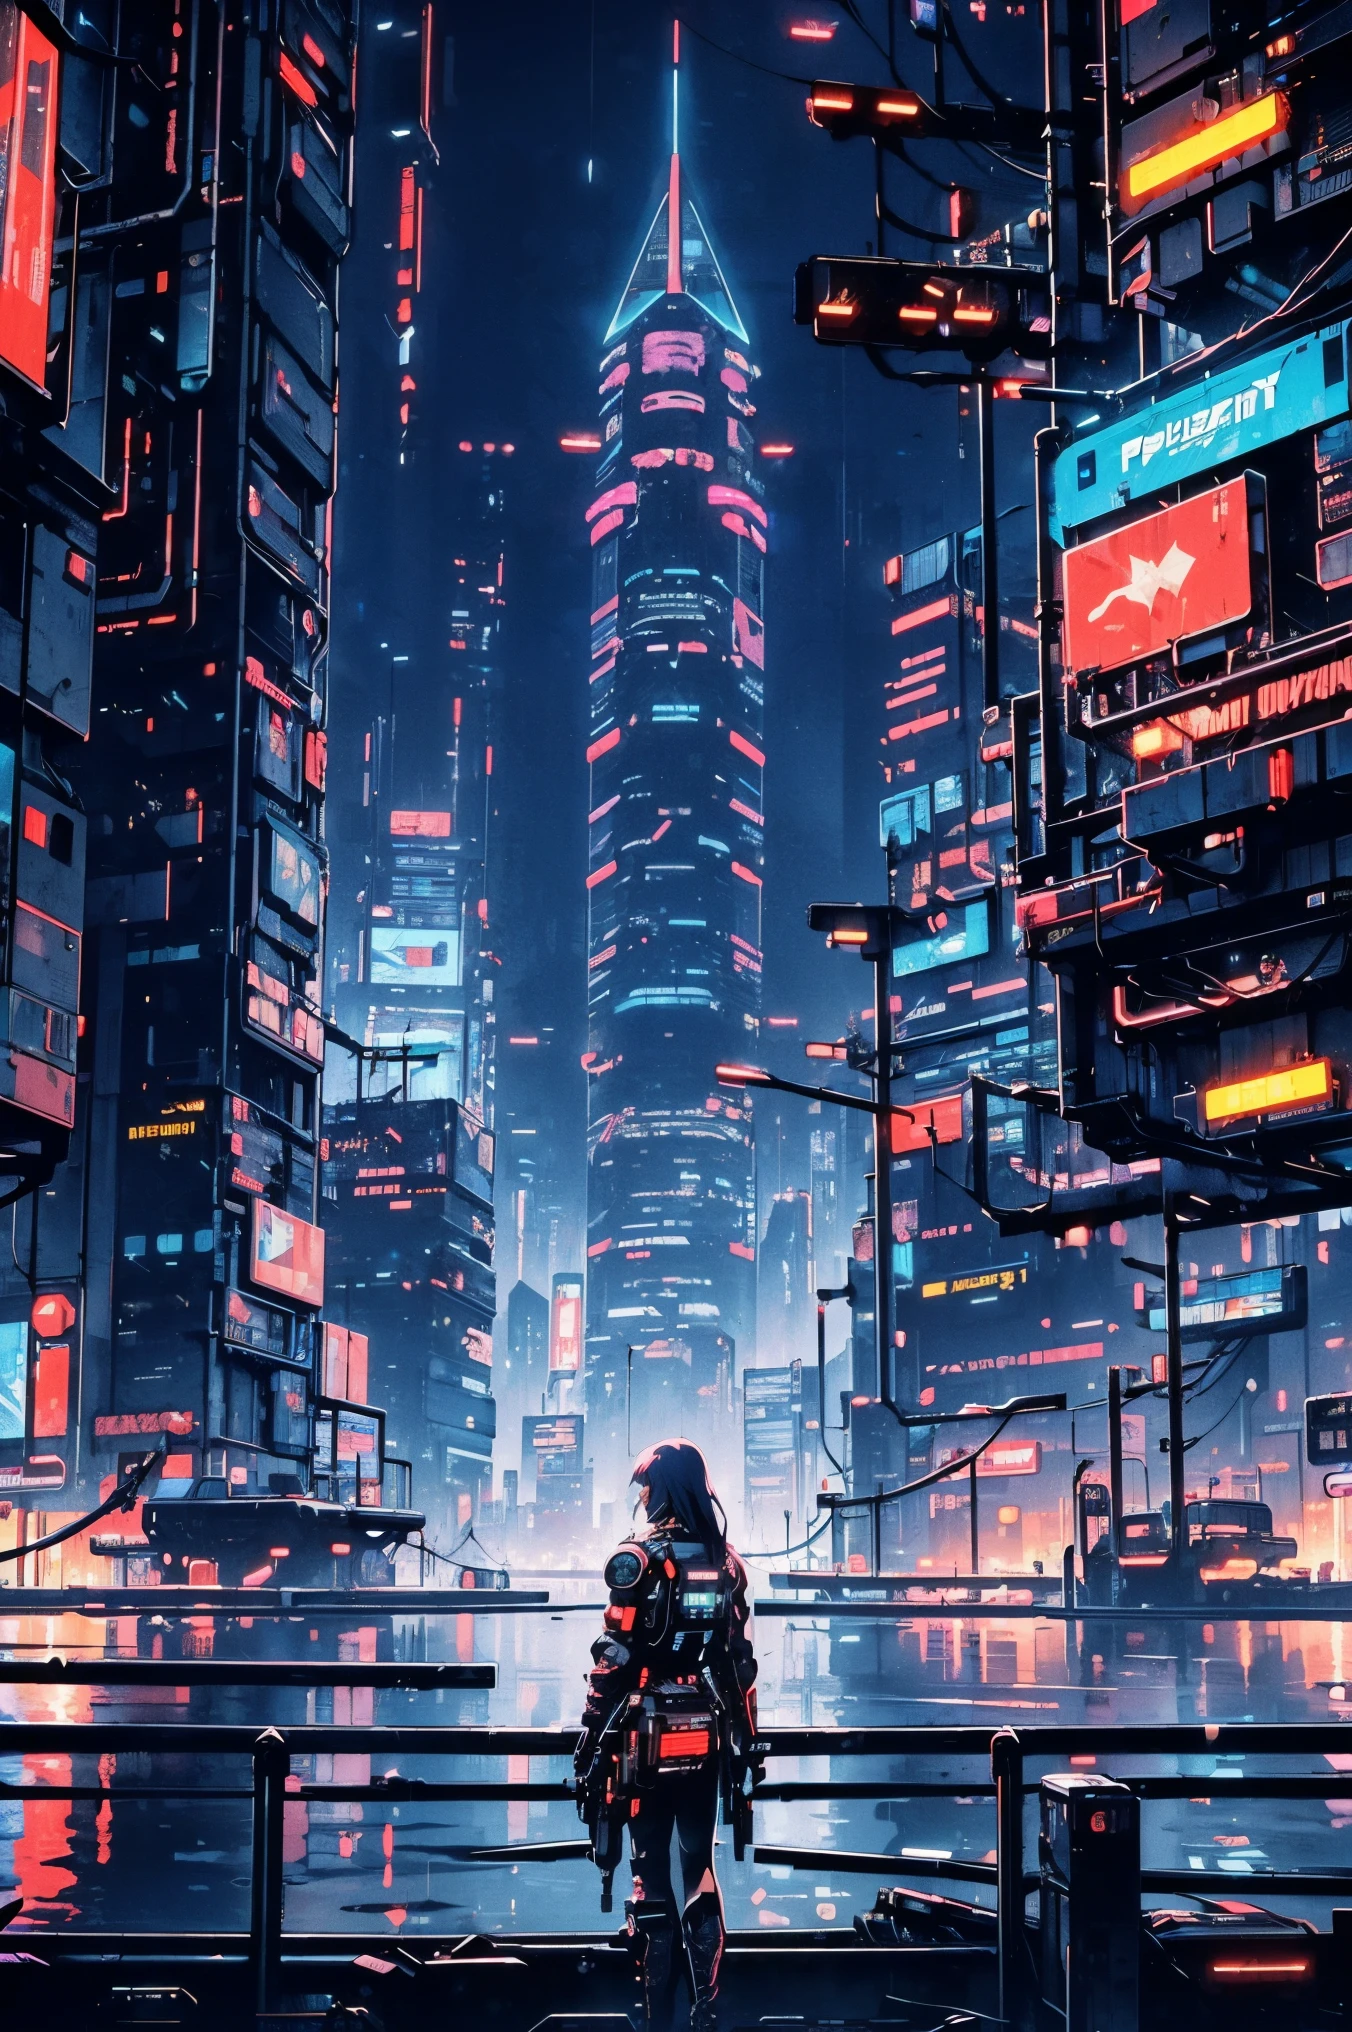 ((Futuro ciberpunk)), imagem do centro de uma cidade cyberpunk, cercado por prédios com um rio no meio, balsa na cidade, balsa amarela, ponto atravessando a cidade, cartazes publicitários em todos os lugares, Futuro retrô